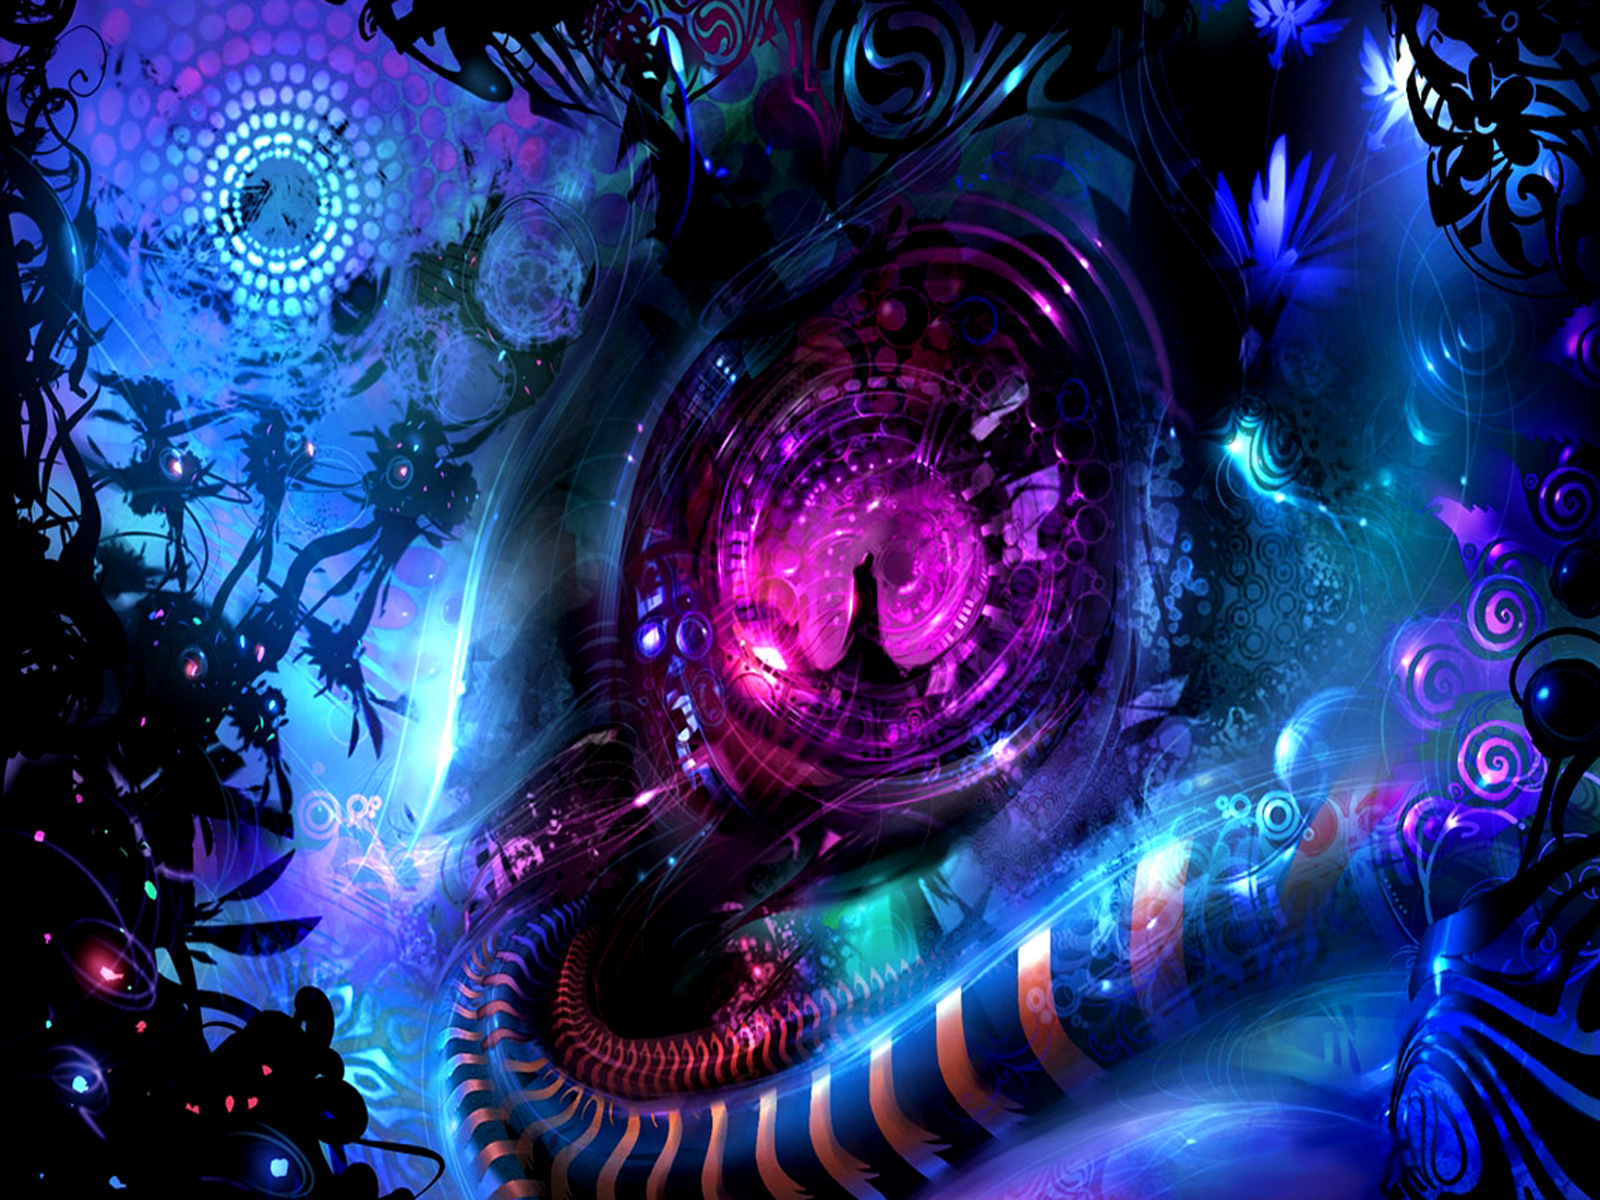 Sanctuary: A captivating sci-fi abstract desktop wallpaper.